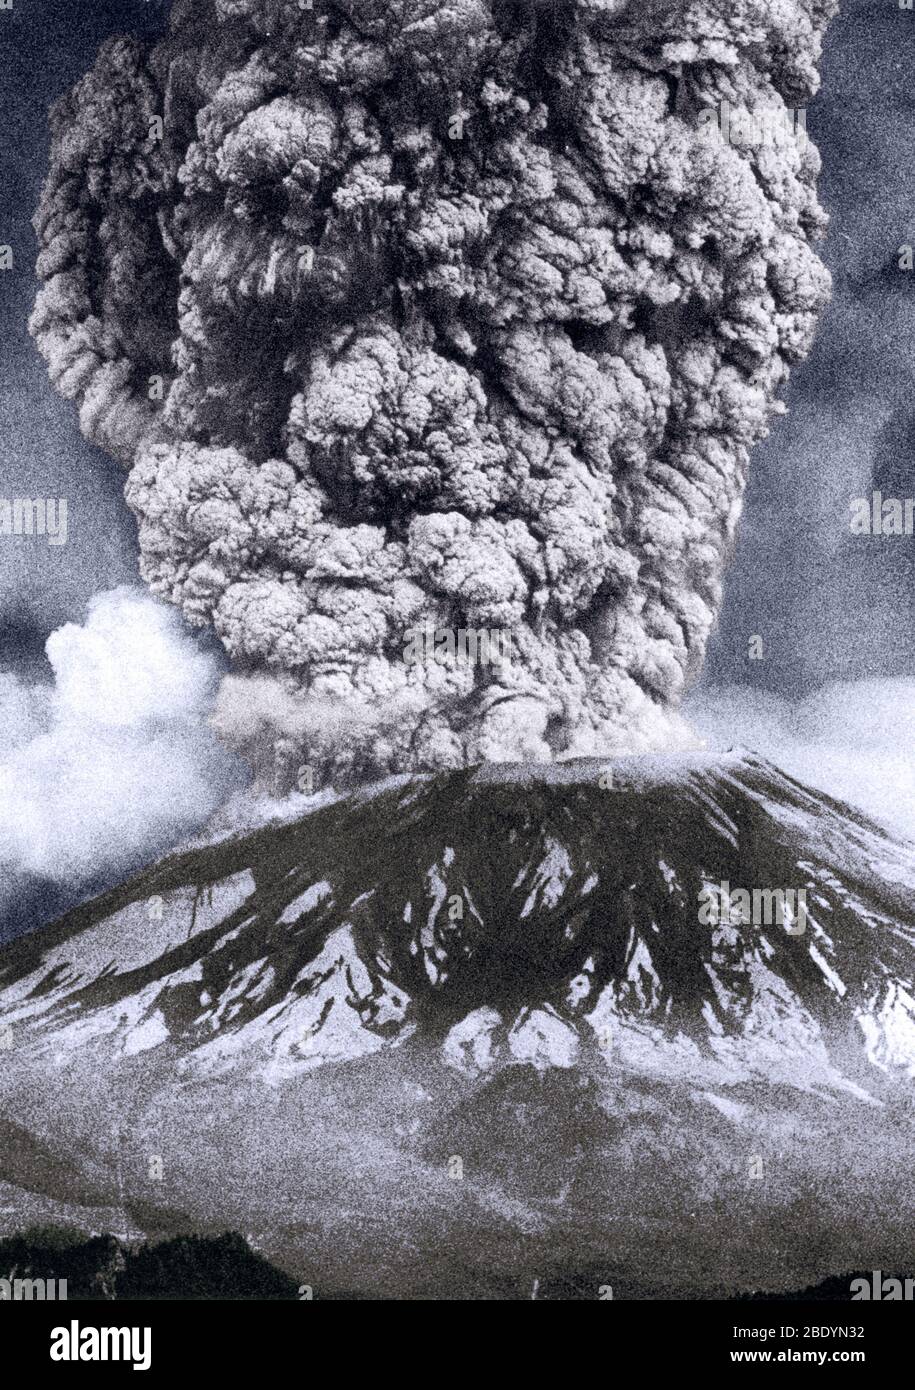 Il Monte St. Helens, Washington, è il vulcano più attivo della catena montuosa delle Cascade. Il primo segno di attività al Monte Sant'Elena nella primavera del 1980 fu una serie di piccoli terremoti che iniziarono il 16 marzo. Esplosioni di vapore il 27 marzo ha fatto esplodere un cratere attraverso la calotta di ghiaccio sulla cima del vulcano. Nel giro di una settimana il cratere era cresciuto fino a circa 1,300 piedi di diametro e due sistemi di crepe giganti attraversavano l'intera area di cima. Entro maggio 17, più di 10,000 terremoti avevano scosso il vulcano e il fianco nord era cresciuto verso l'esterno di almeno 450 piedi per formare un notevole rigonfiamento. Tale deformazione drammatica del vol Foto Stock